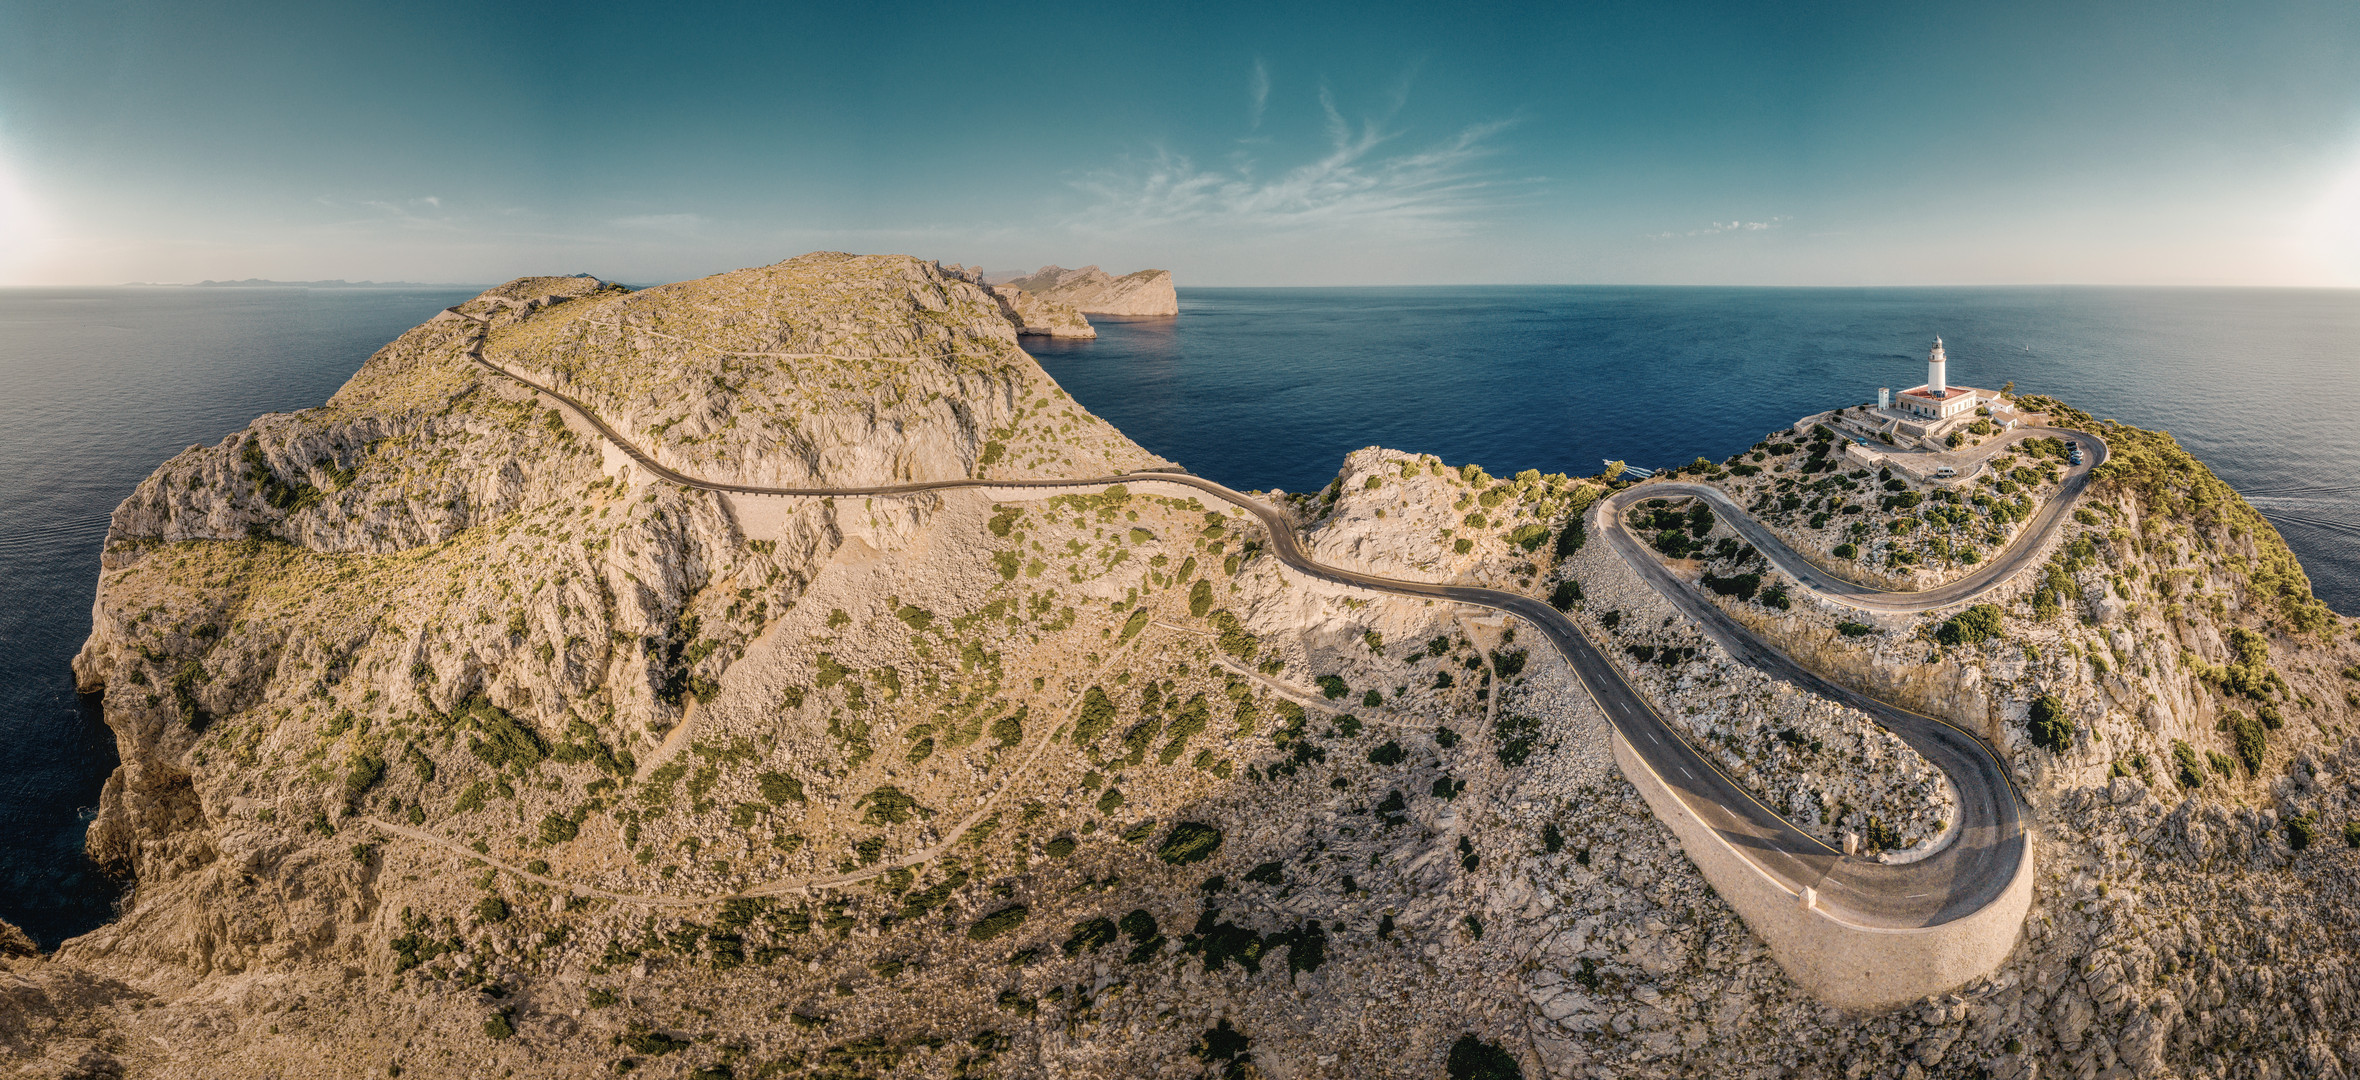 Panorama von einem Leuchtturm auf Mallorca im Norden / Cap Formentor 